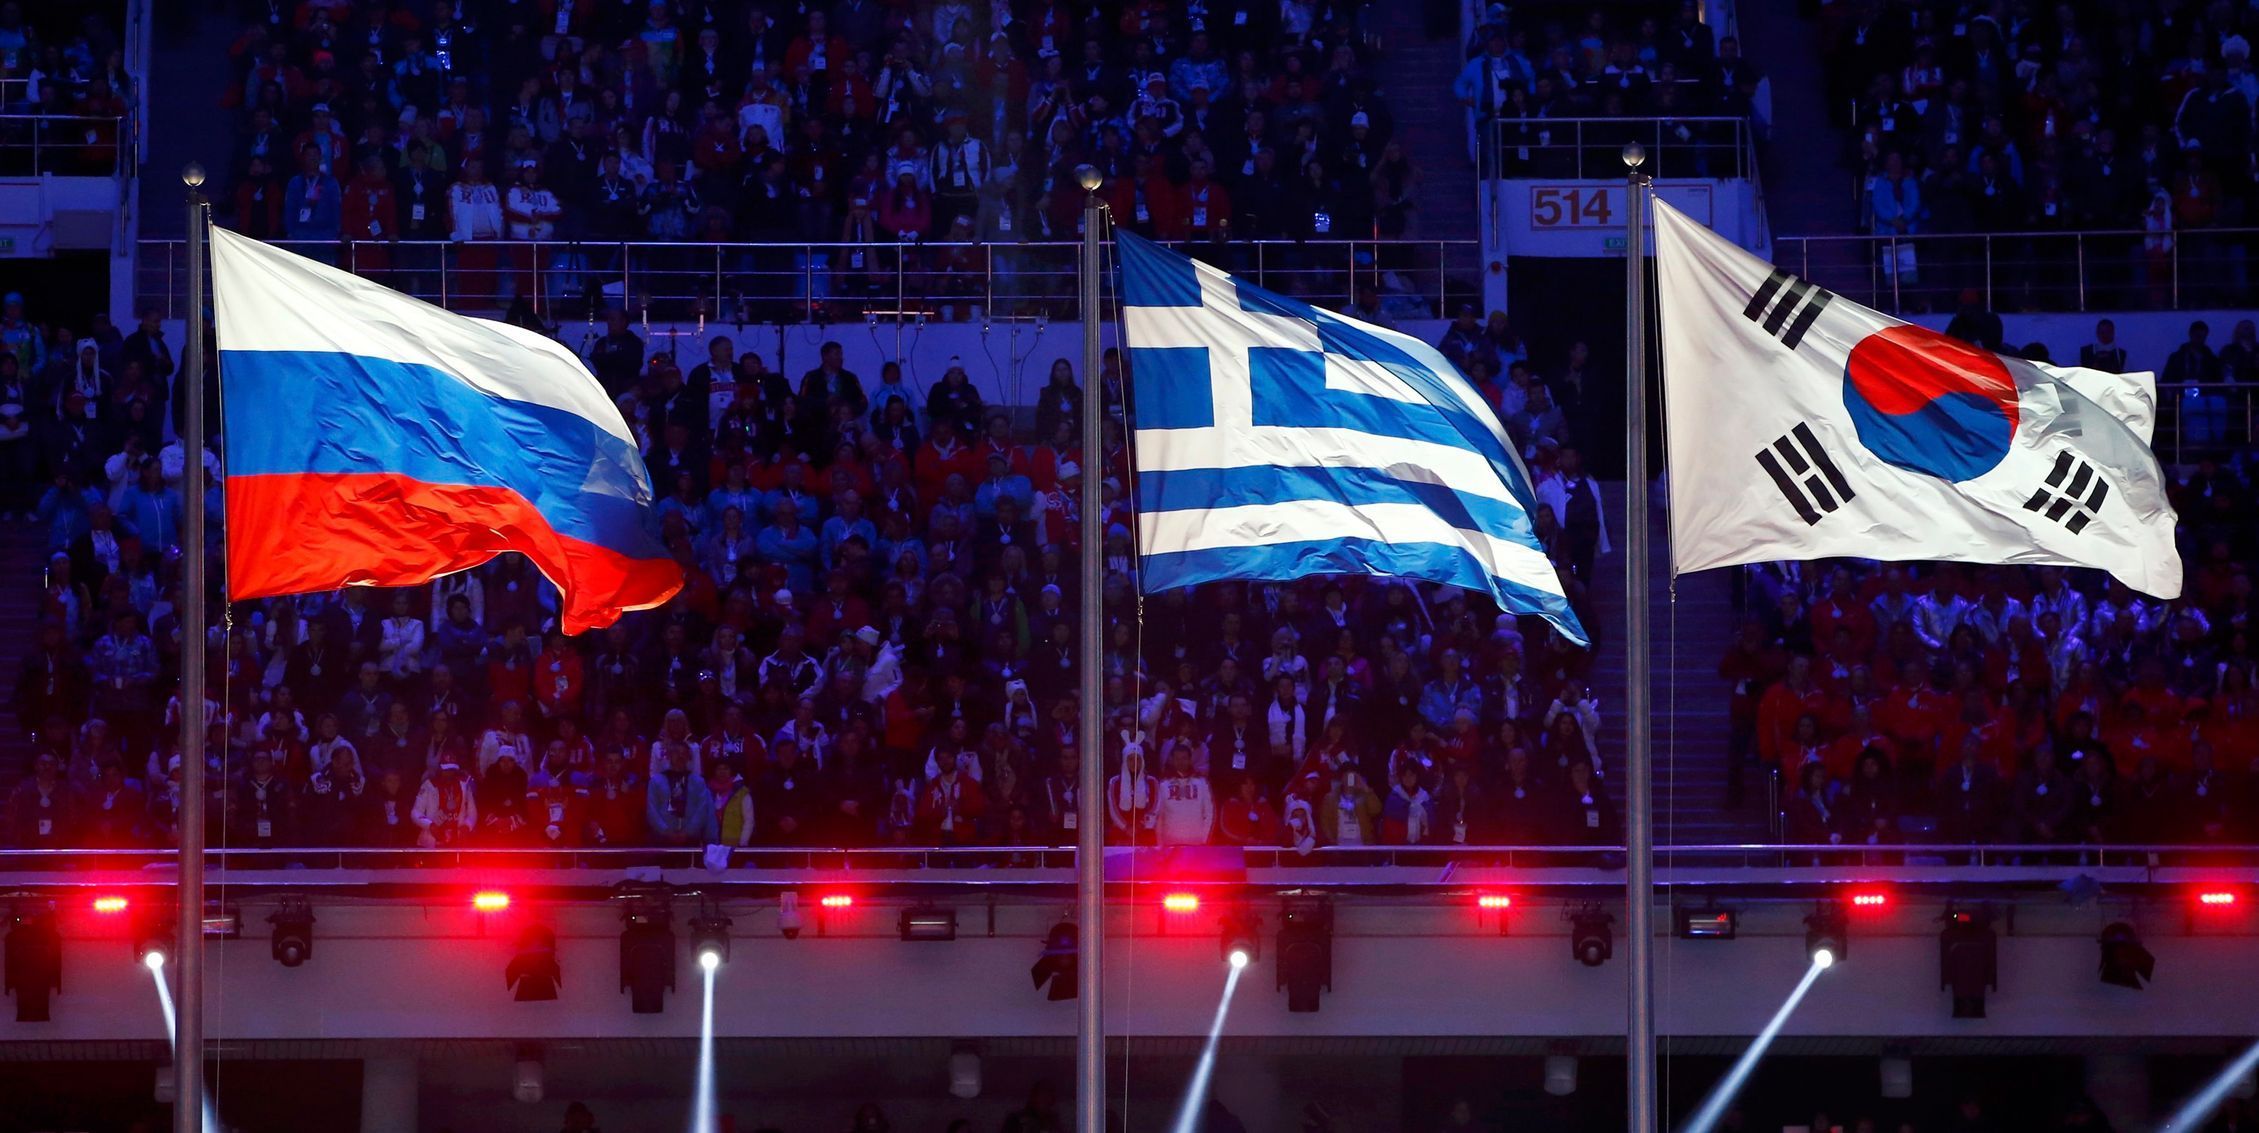 Soči 2014, závěrečný ceremoniál: ruská, řecká a korejská vlajka